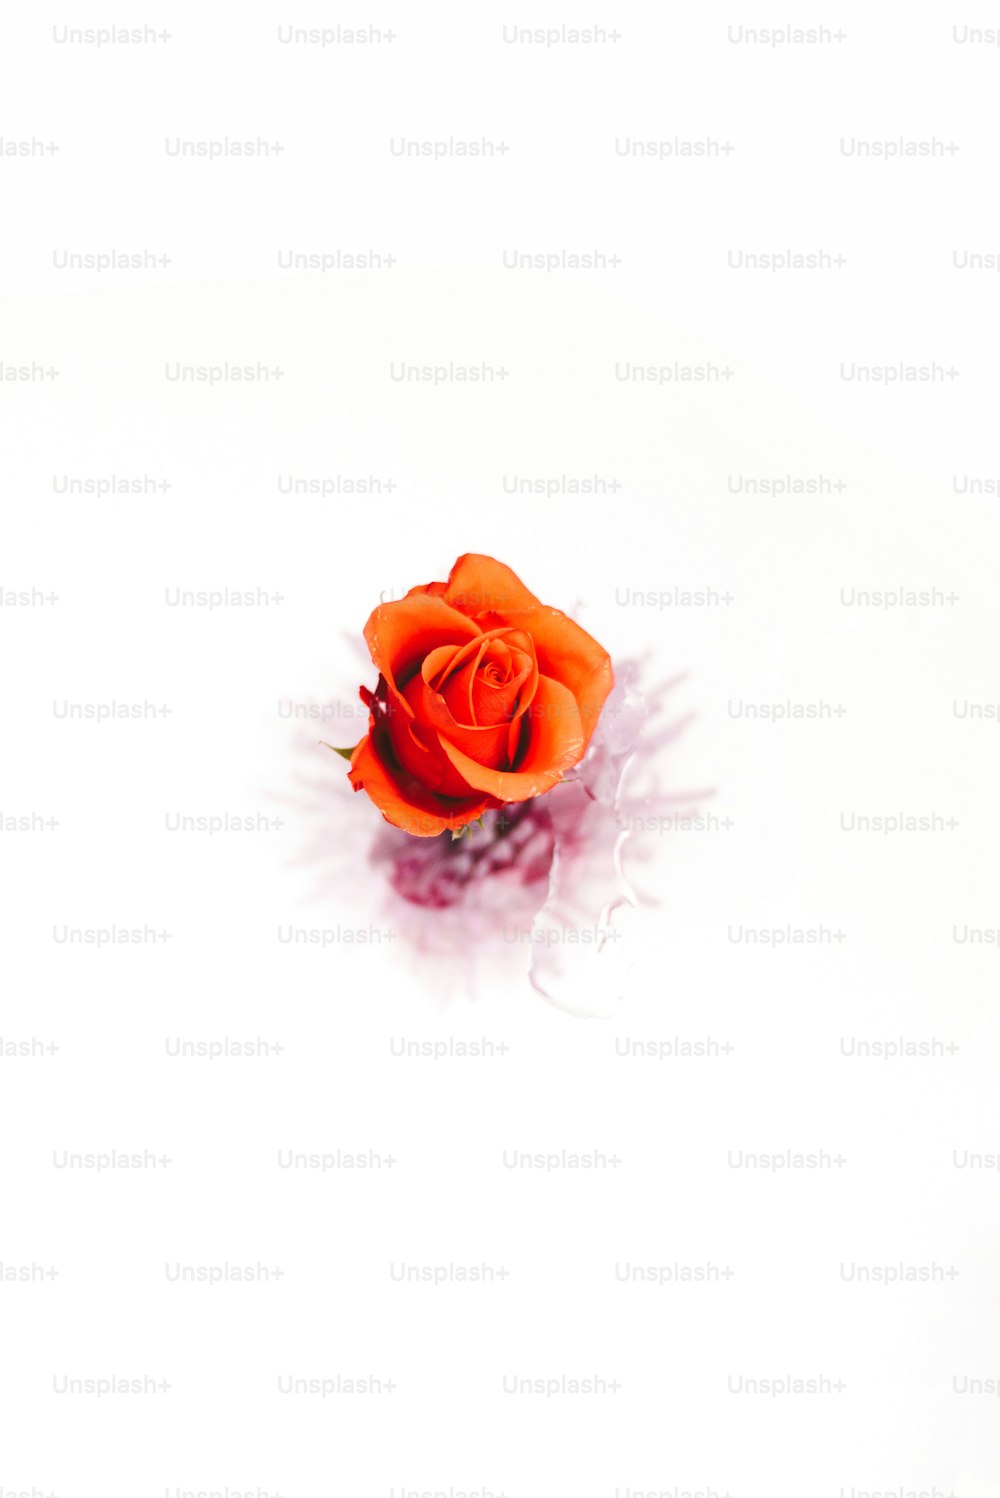 Una sola rosa naranja sobre una superficie blanca